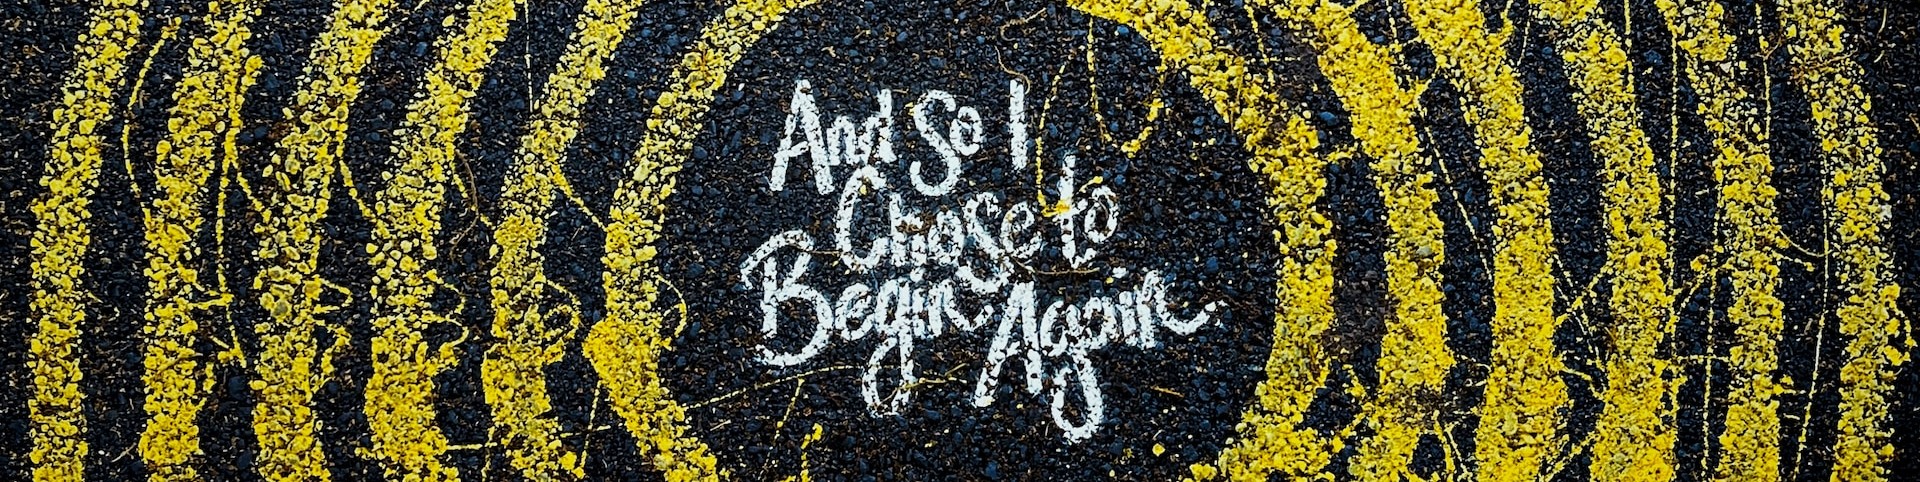 Sidewalk art that says: "And so I chose to begin again."